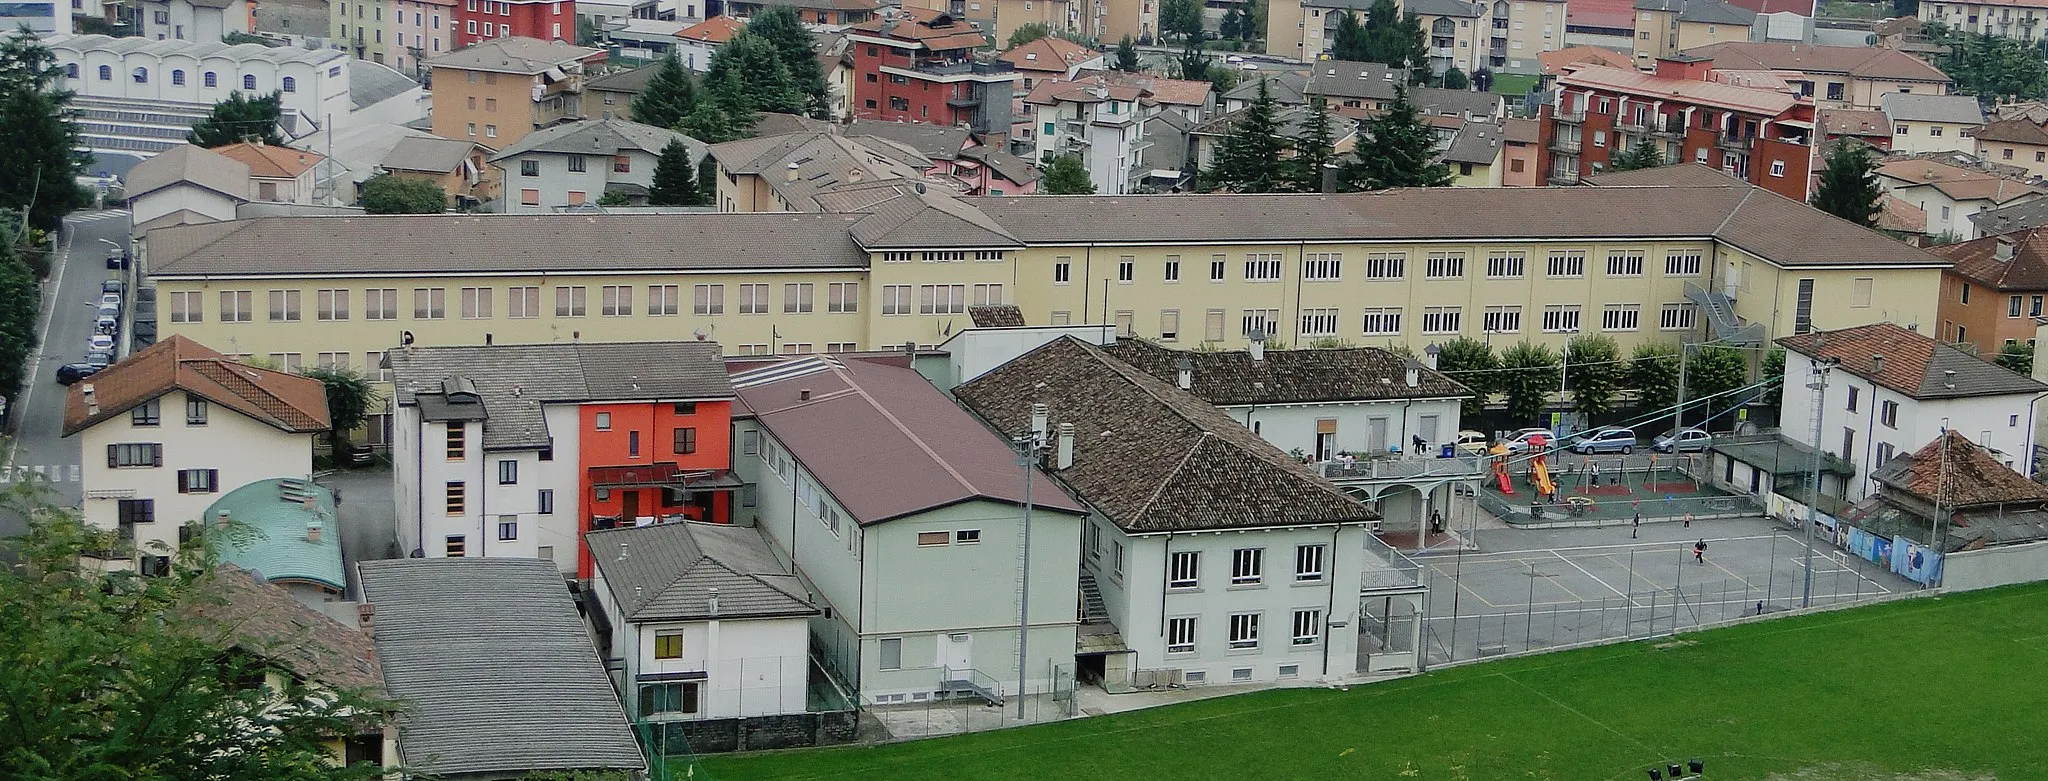 Photo showing: Convento suore Orsoline, Fiorano al Serio, Bergamo, Italia